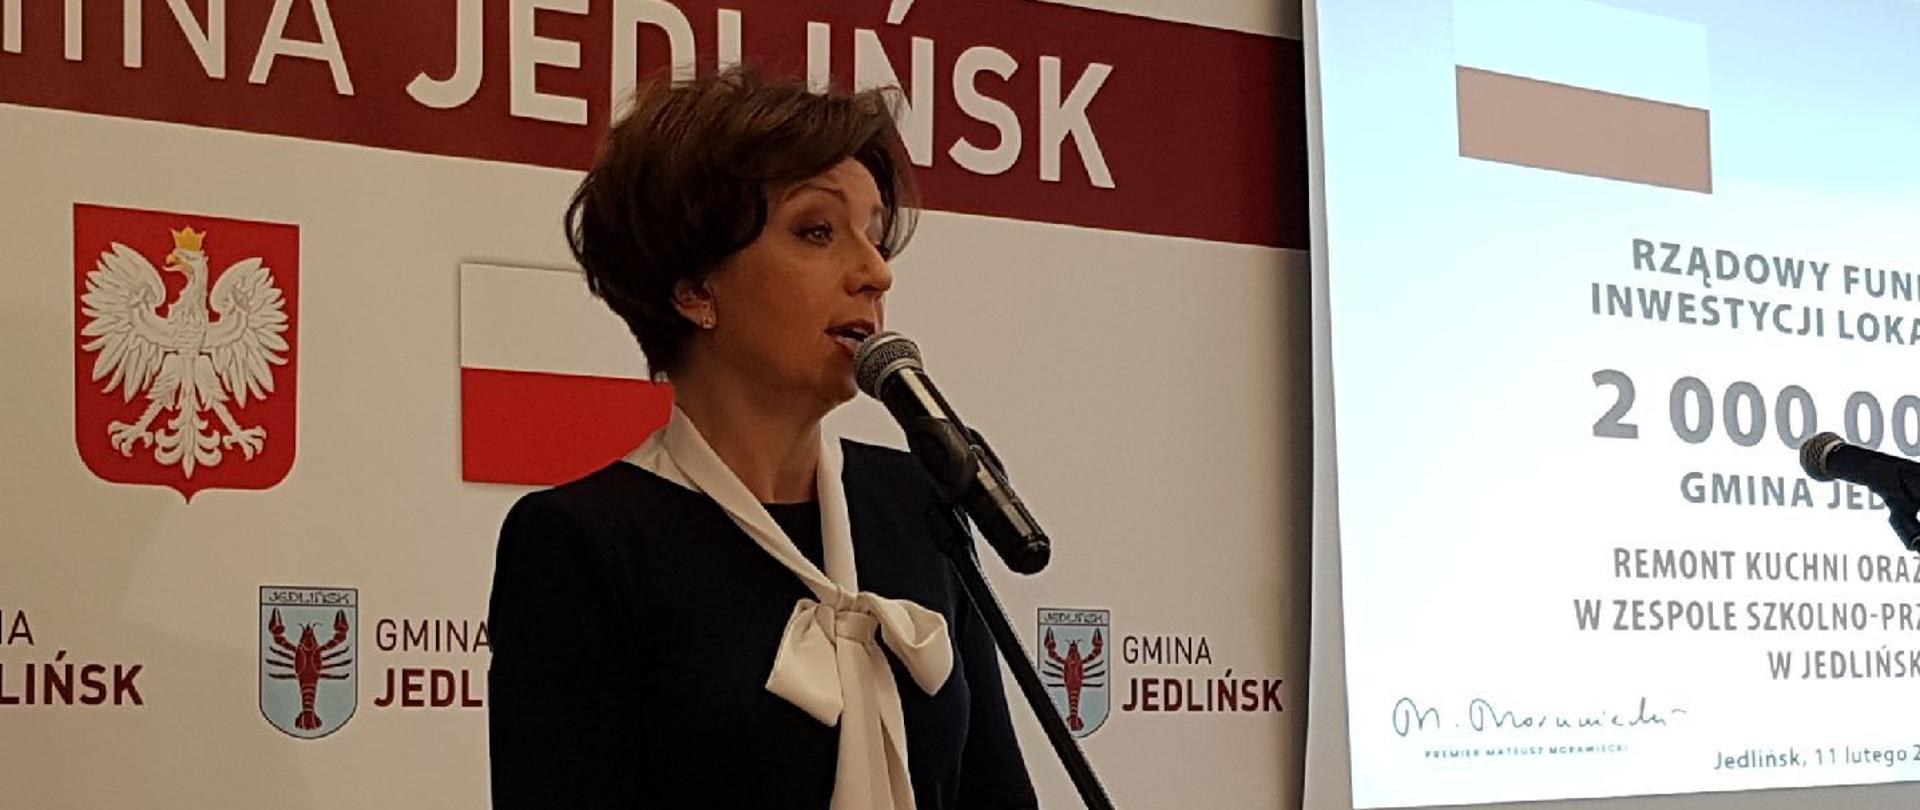 Na zdjęciu przemawiająca minister Maląg. W tle biały baner z godłem Polski, flagą państwową oraz herbem gminy Jedlińsk.